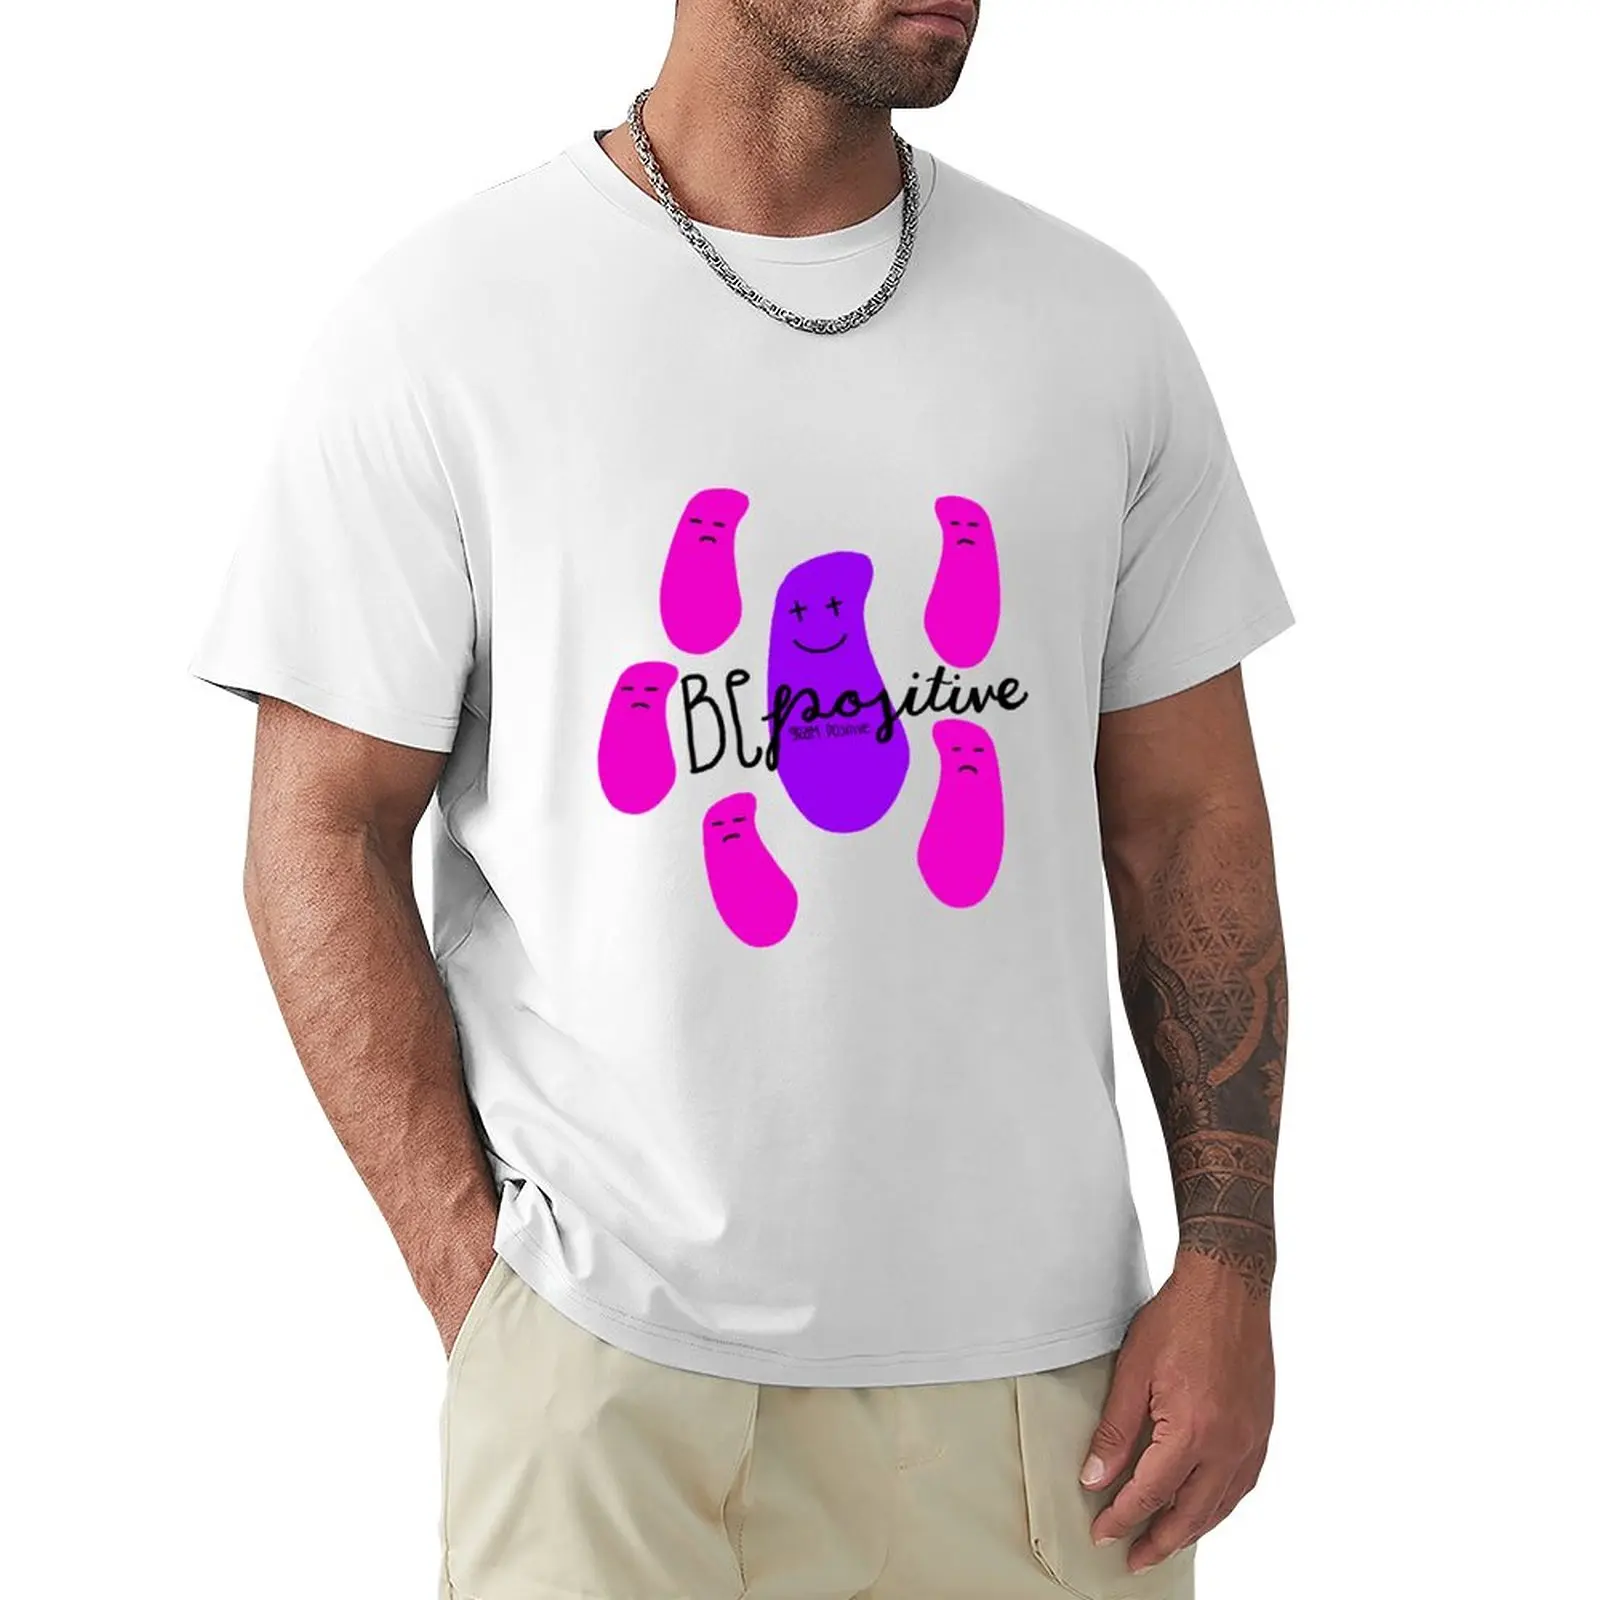 

Хлопковая футболка с надписью про бактерий-бе, летние топы для мальчиков, белые мужские футболки